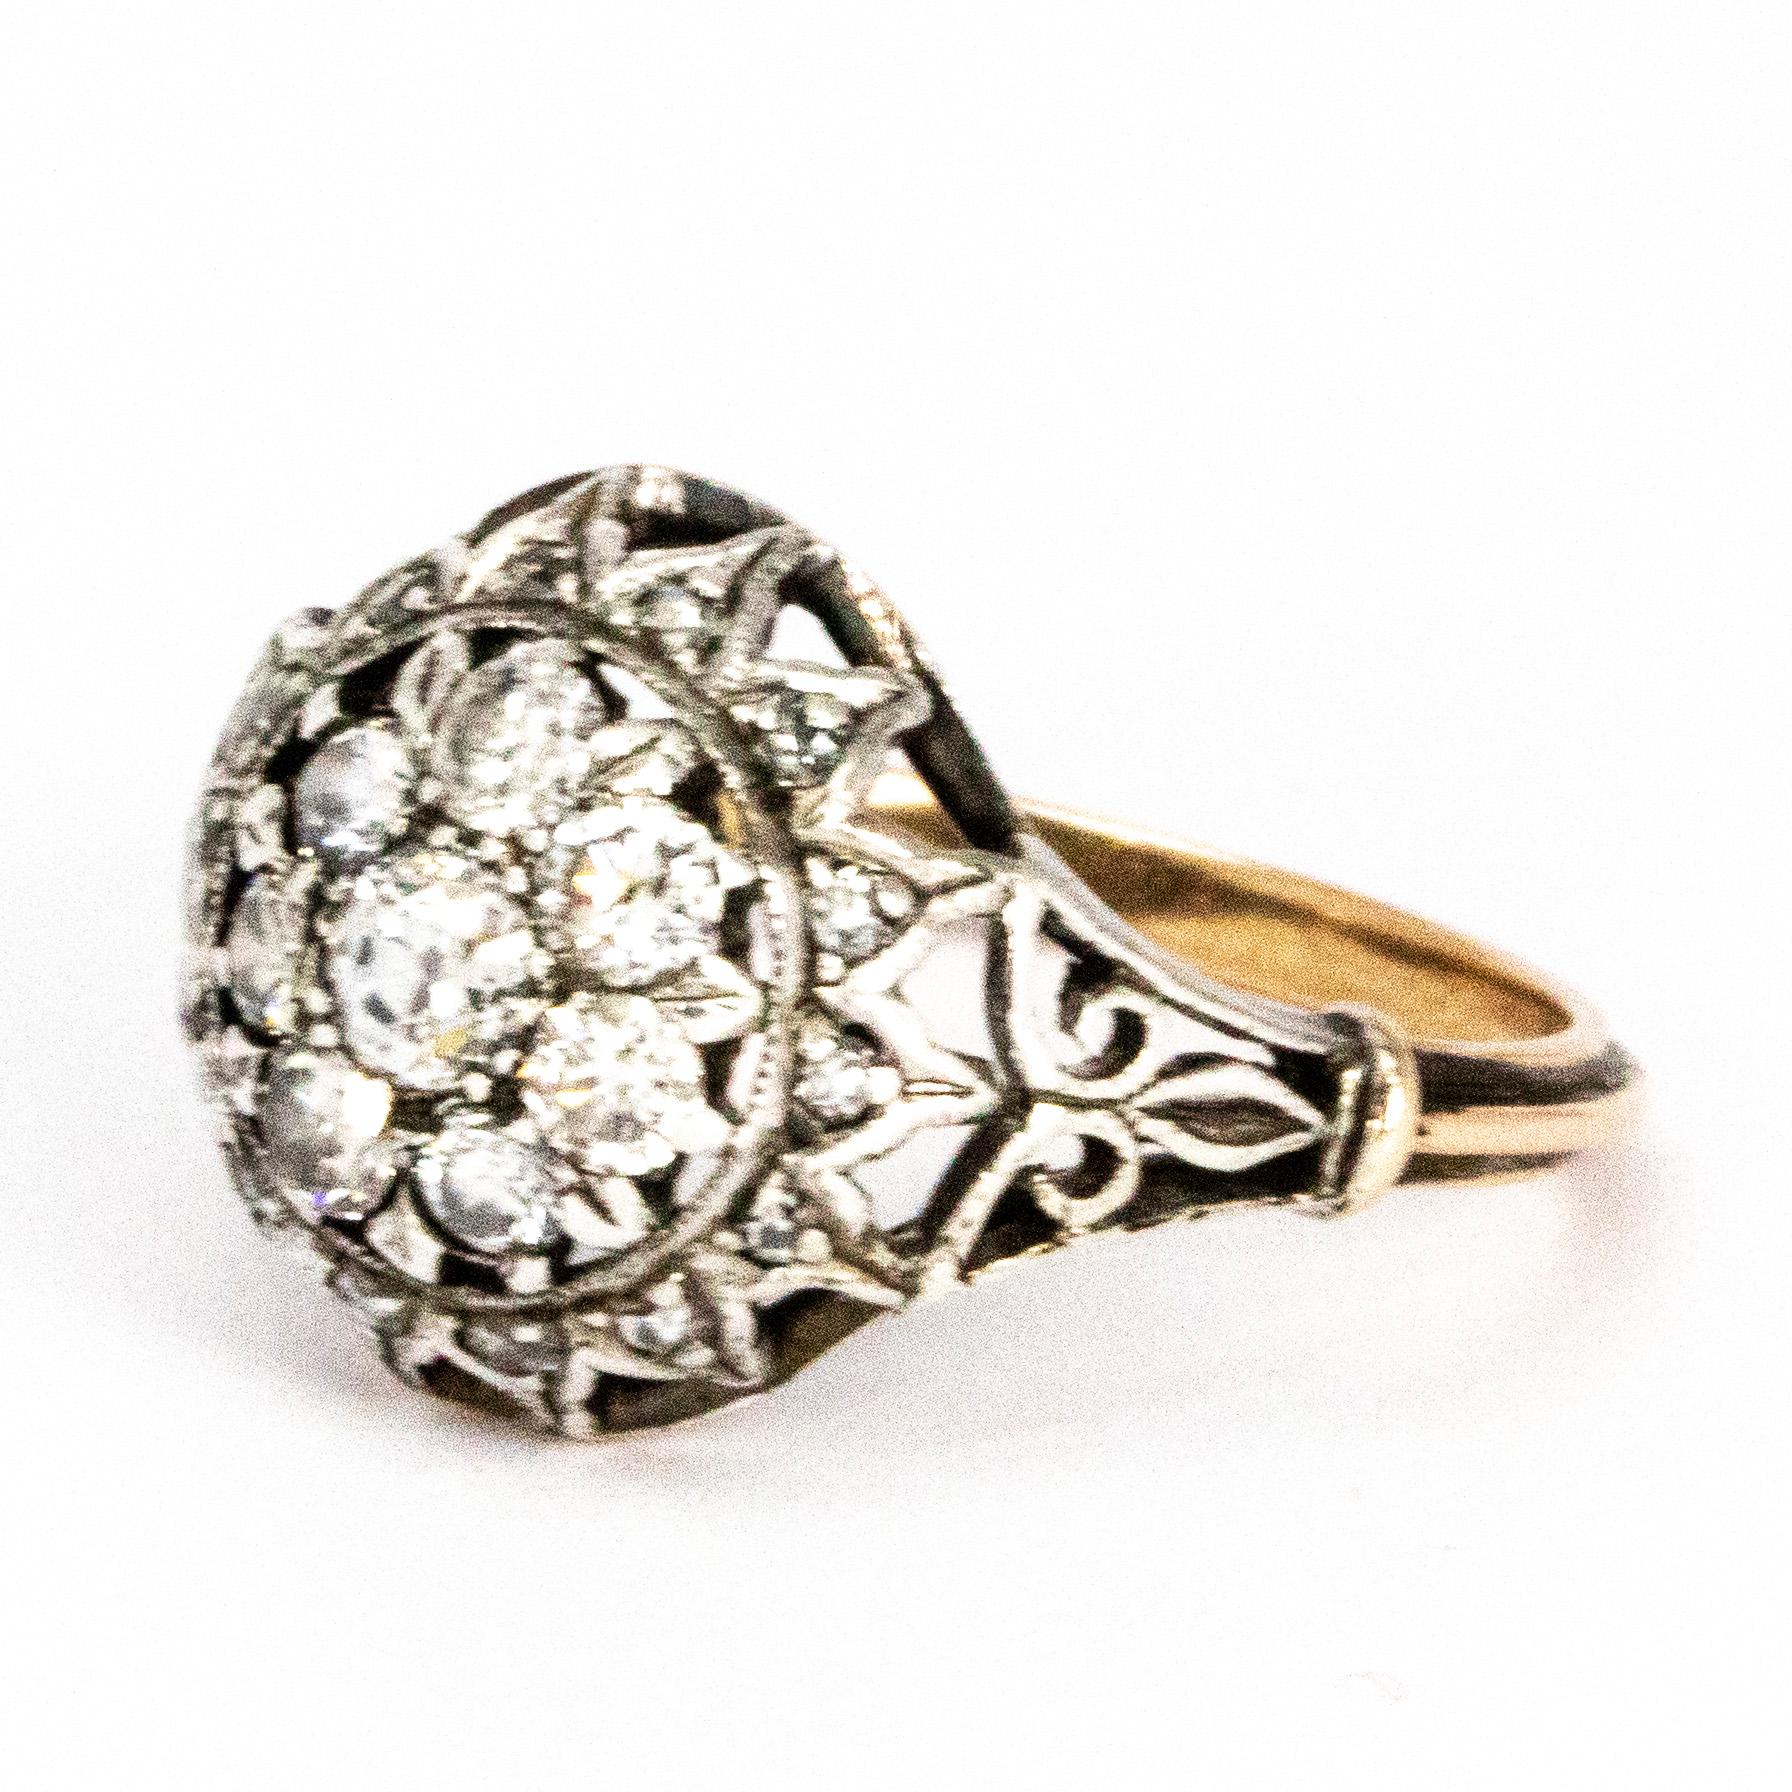 Das verschlungene Design dieses Rings ist einfach wunderschön. Er ist mit Diamanten verziert und aus 18-karätigem Gold modelliert. Der Mittelstein hat eine Größe von 20 Pence, die umliegenden Steine messen 7 Pence. Um den Cluster herum befinden sich